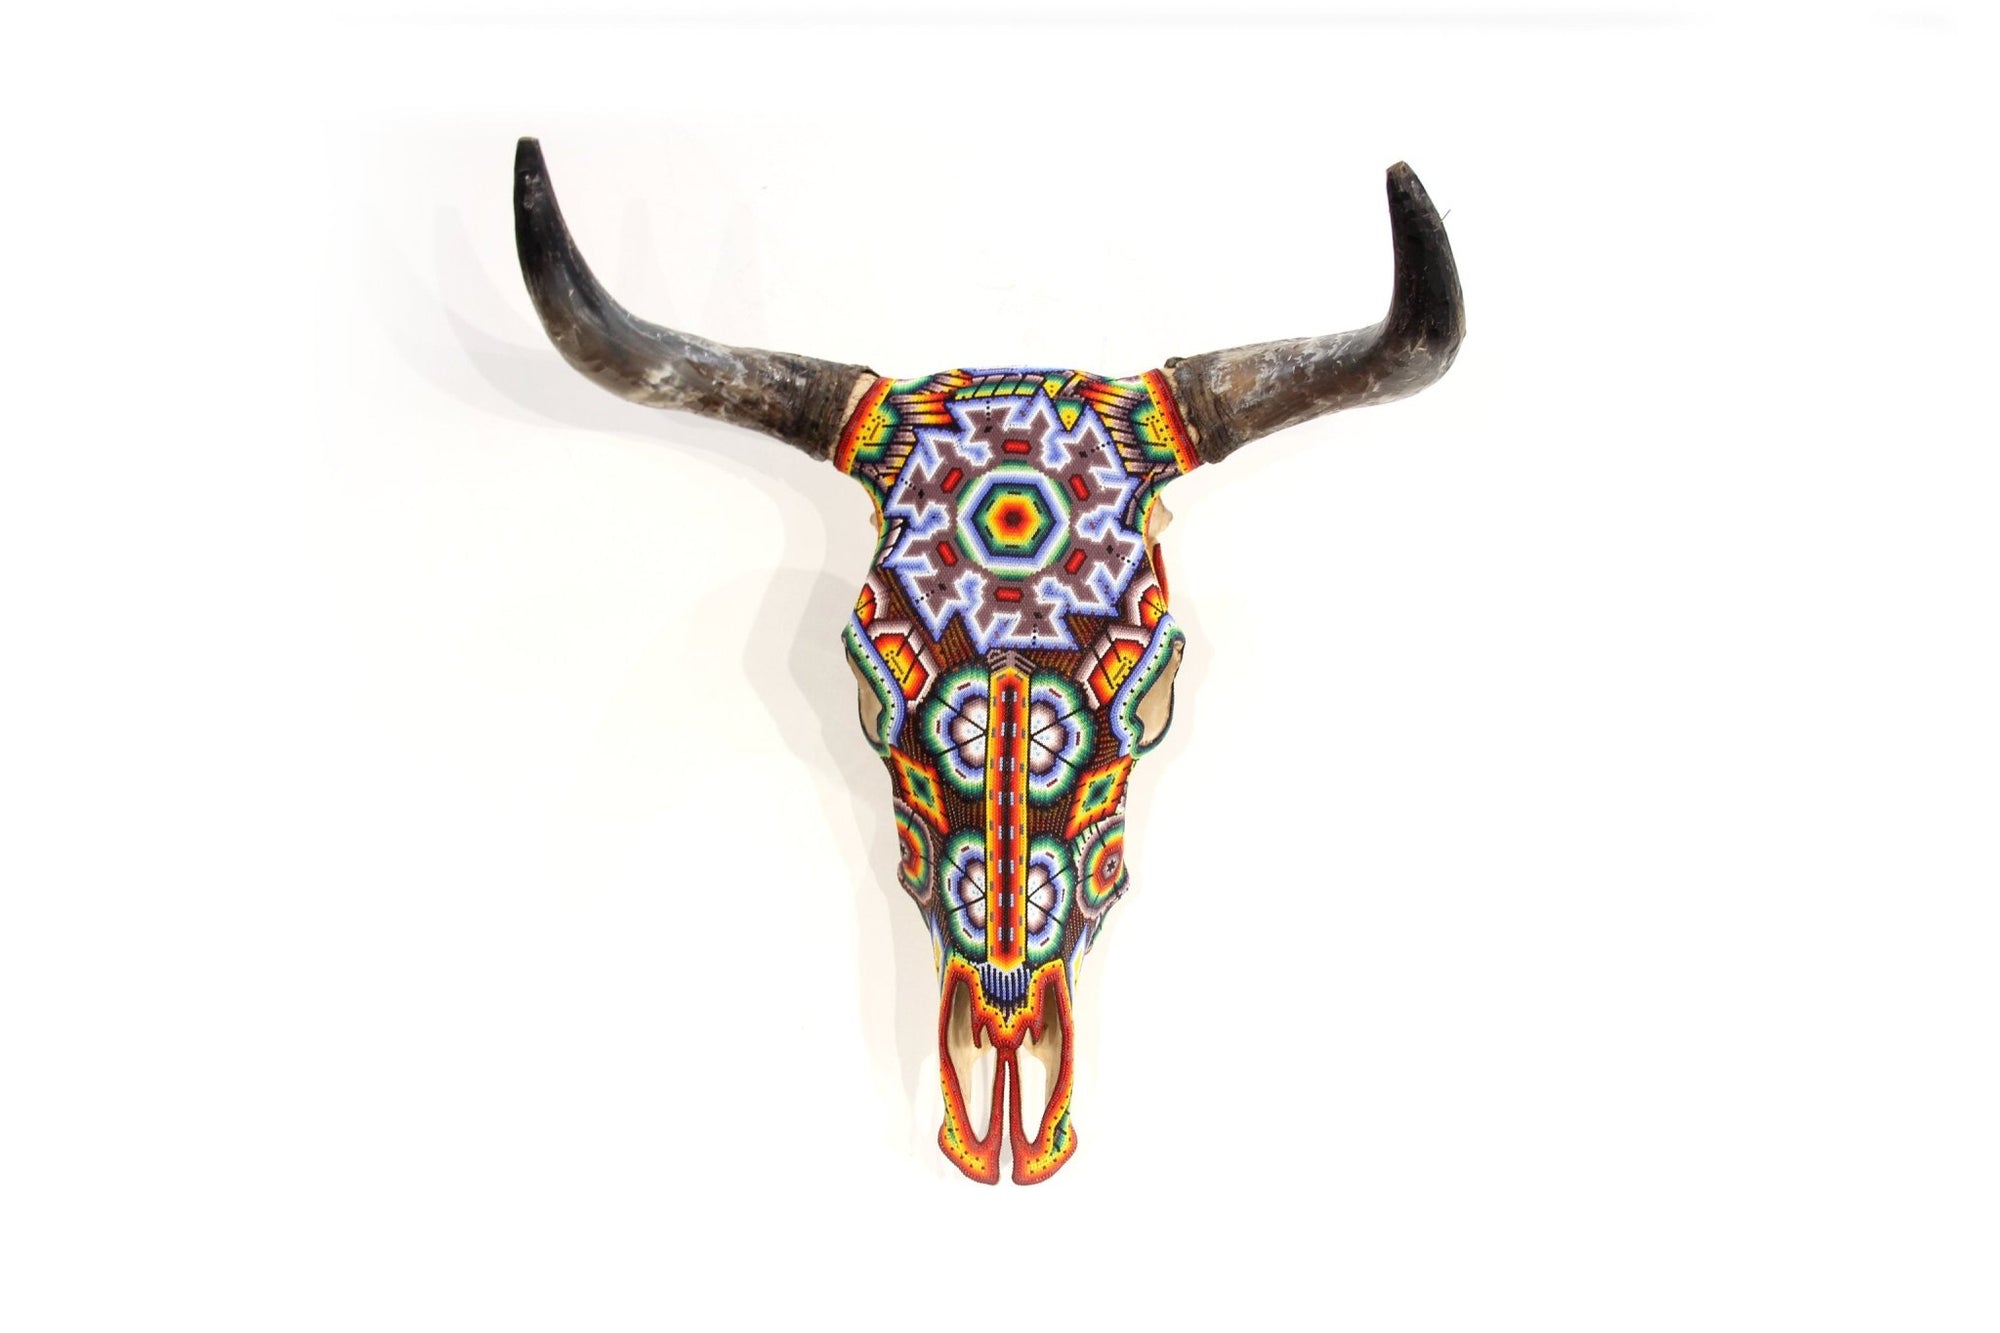 牛の頭蓋骨のウイチョル アート - タテイ ニアアリワメ - ウイチョル アート - マラカメ